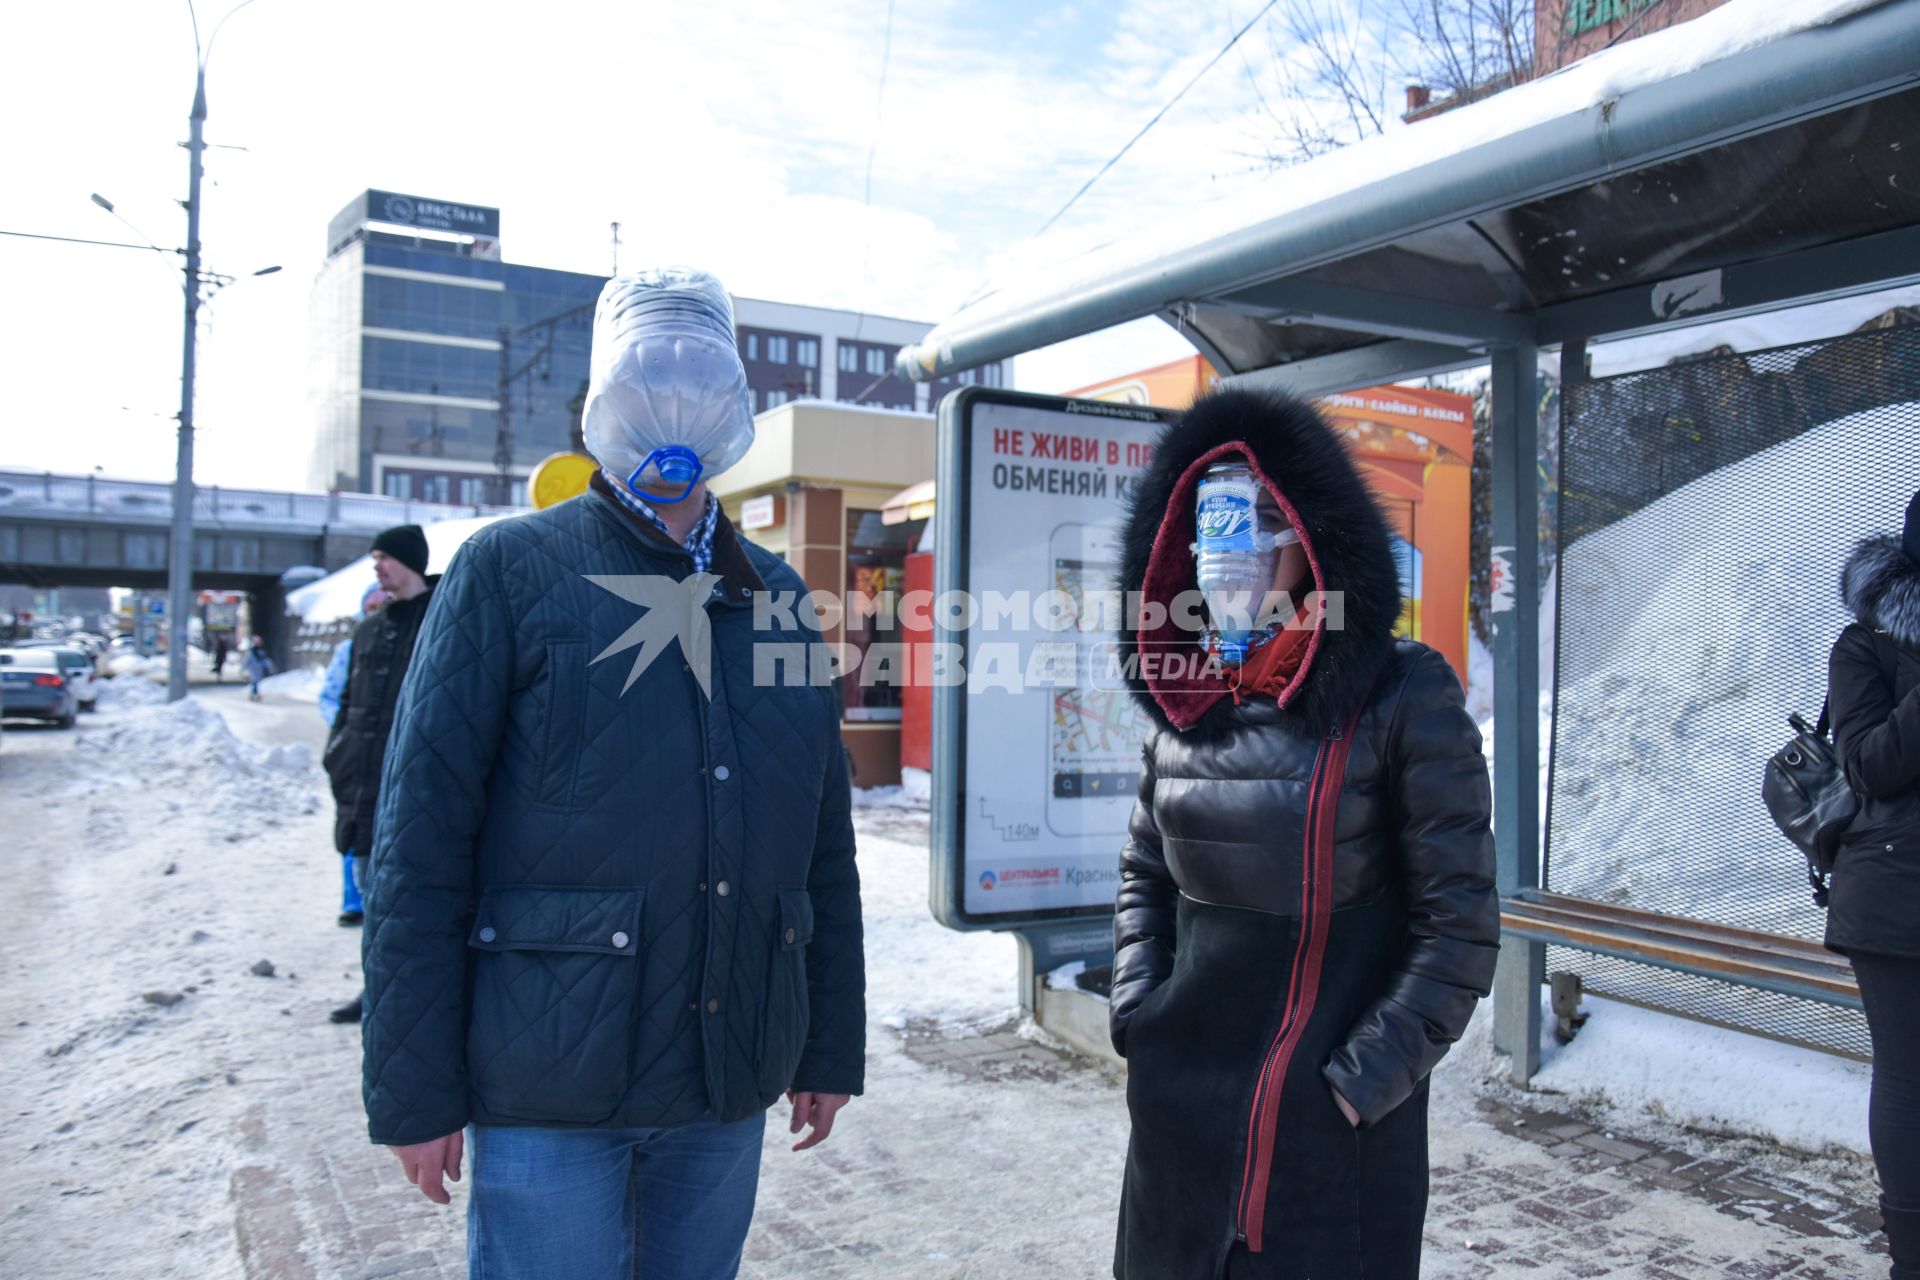 Новосибирск. Девушка и мужчина в самодельных защитных масках во время пандемии коронавируса COVID-19.